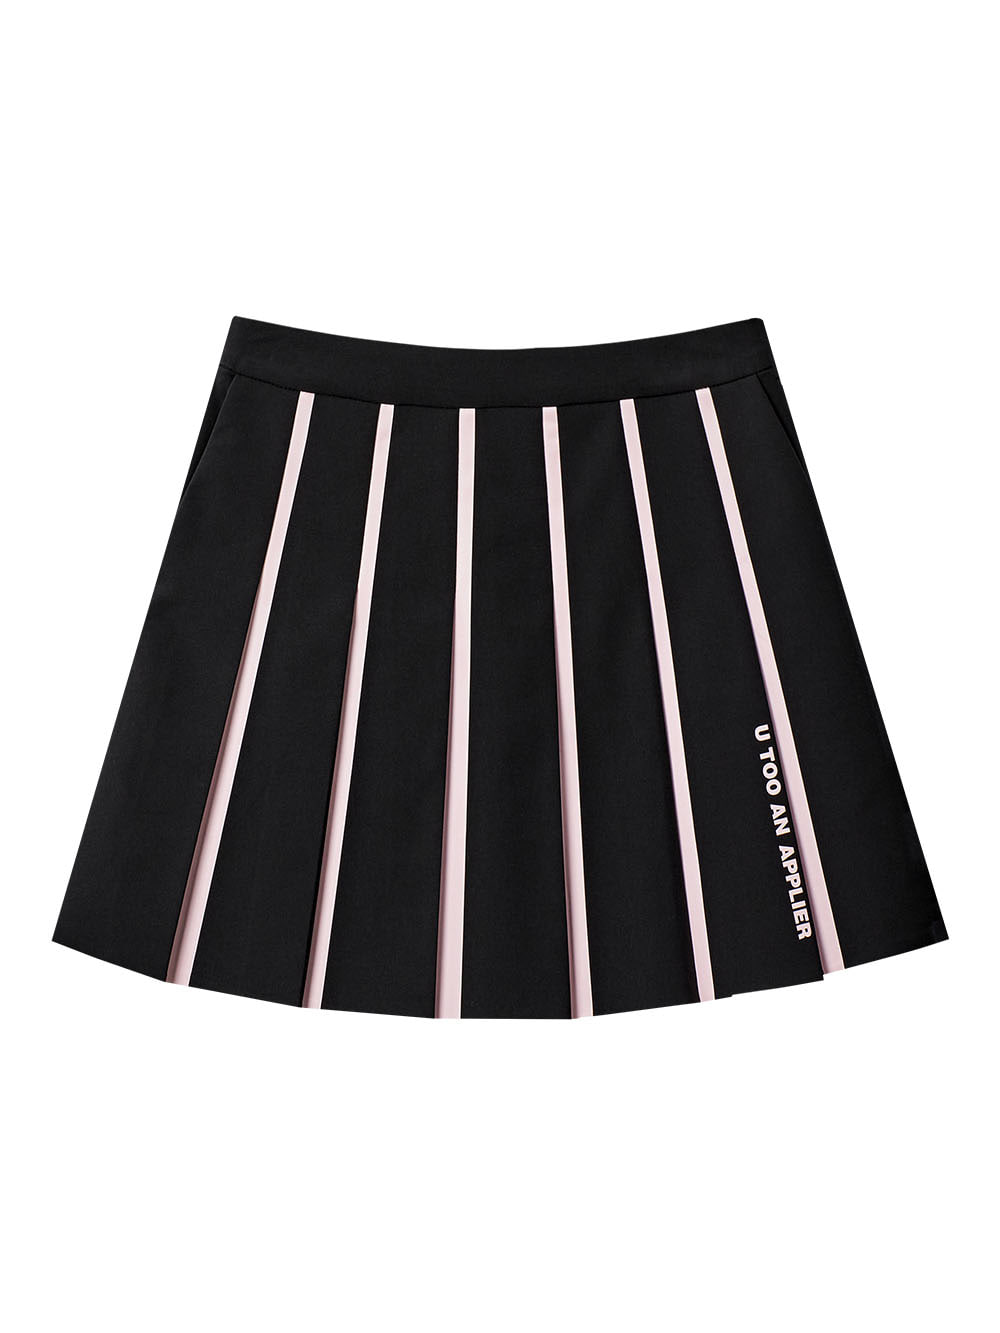 UTAA Blind Welding Fan Skirt : Black (UB4SKF734BK)